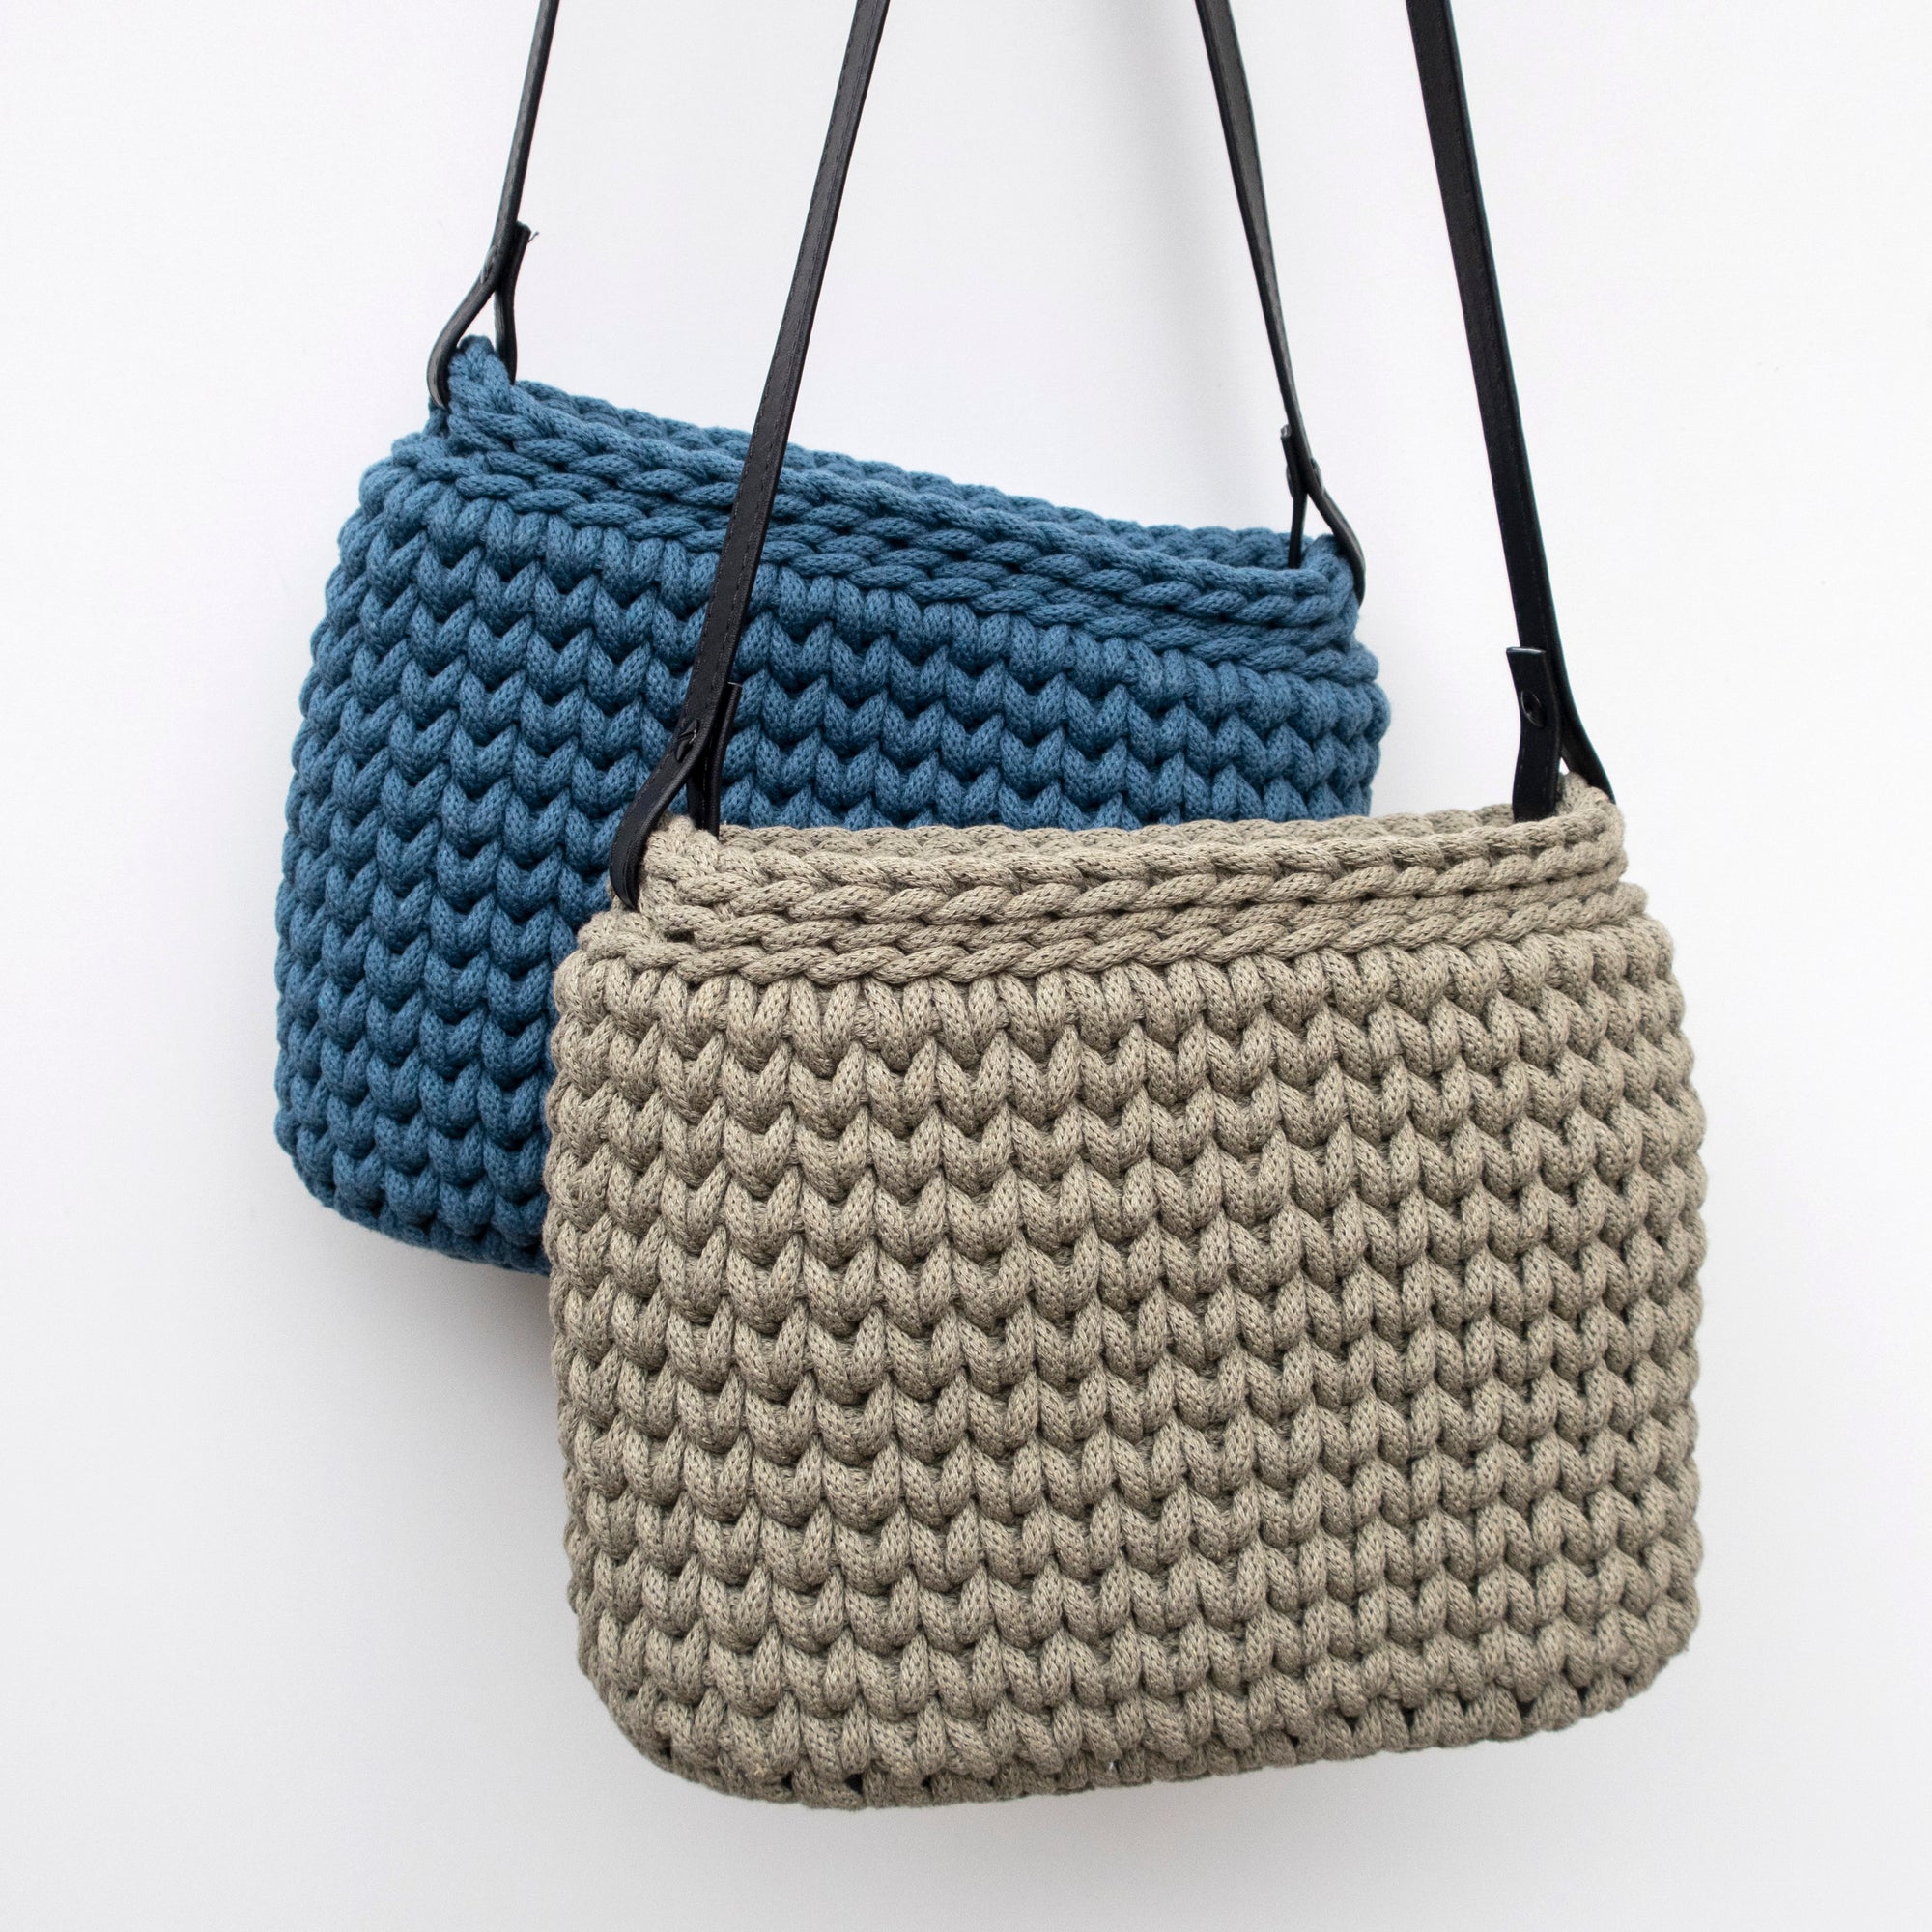 Crochet Video Tutorial - Handbag